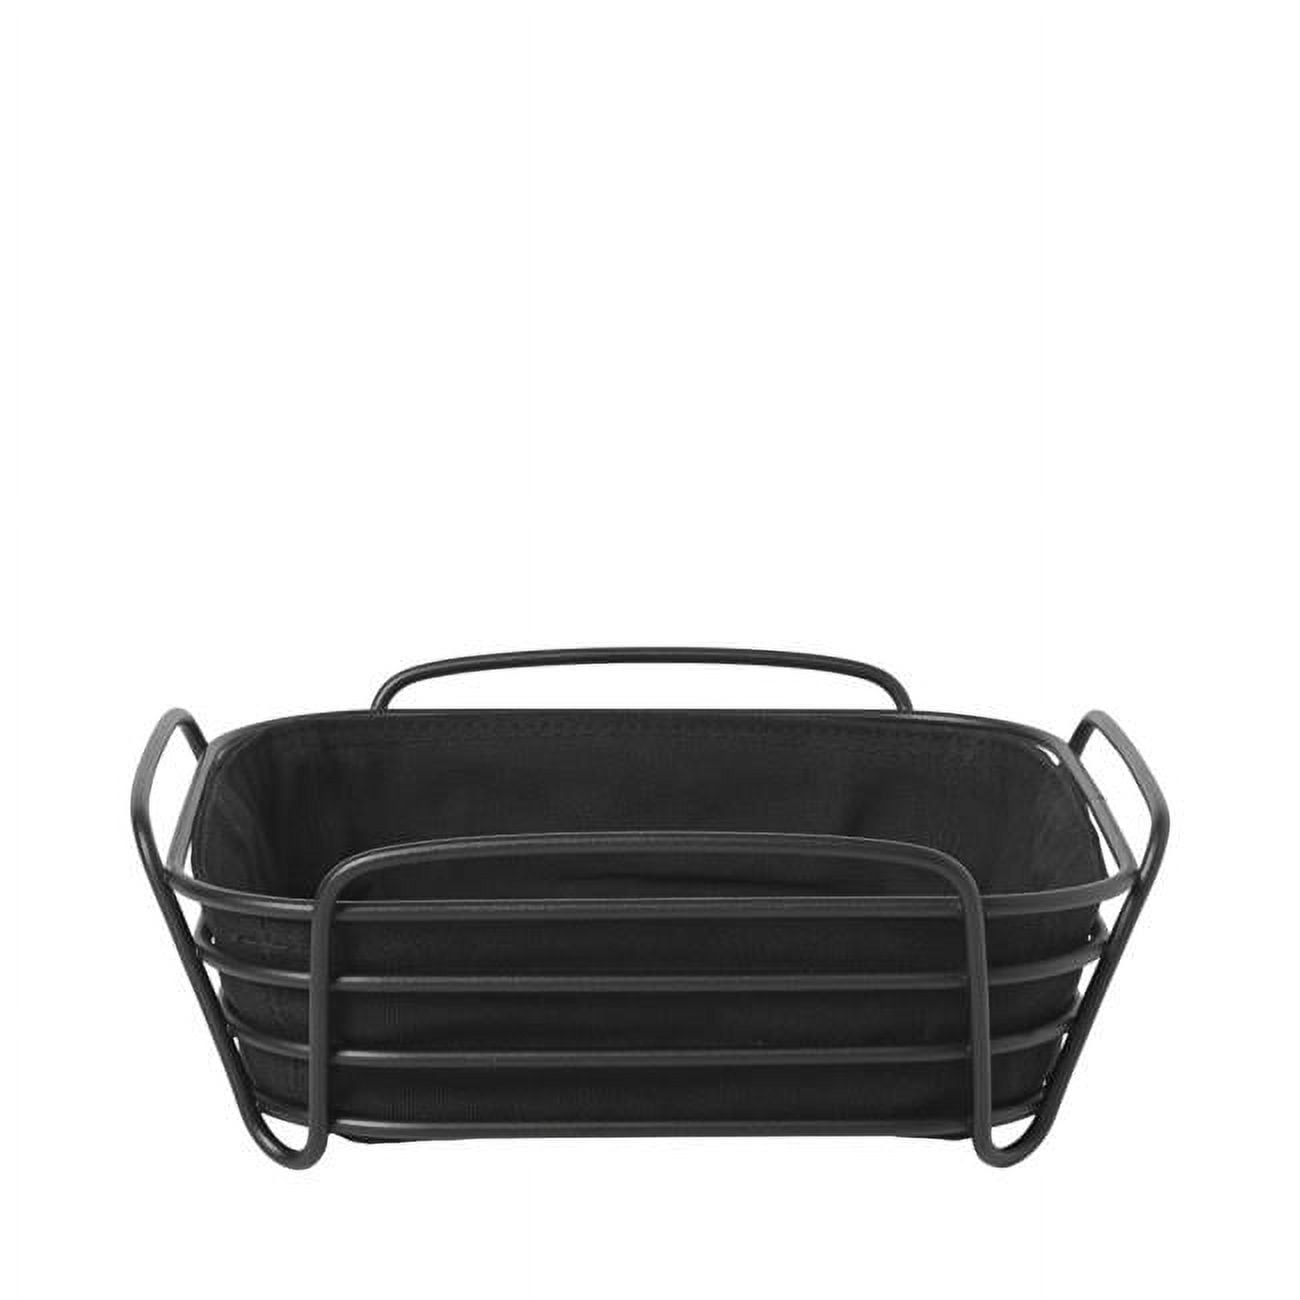 63872 10 X 10 In. Delara Bread Basket, Black - Large